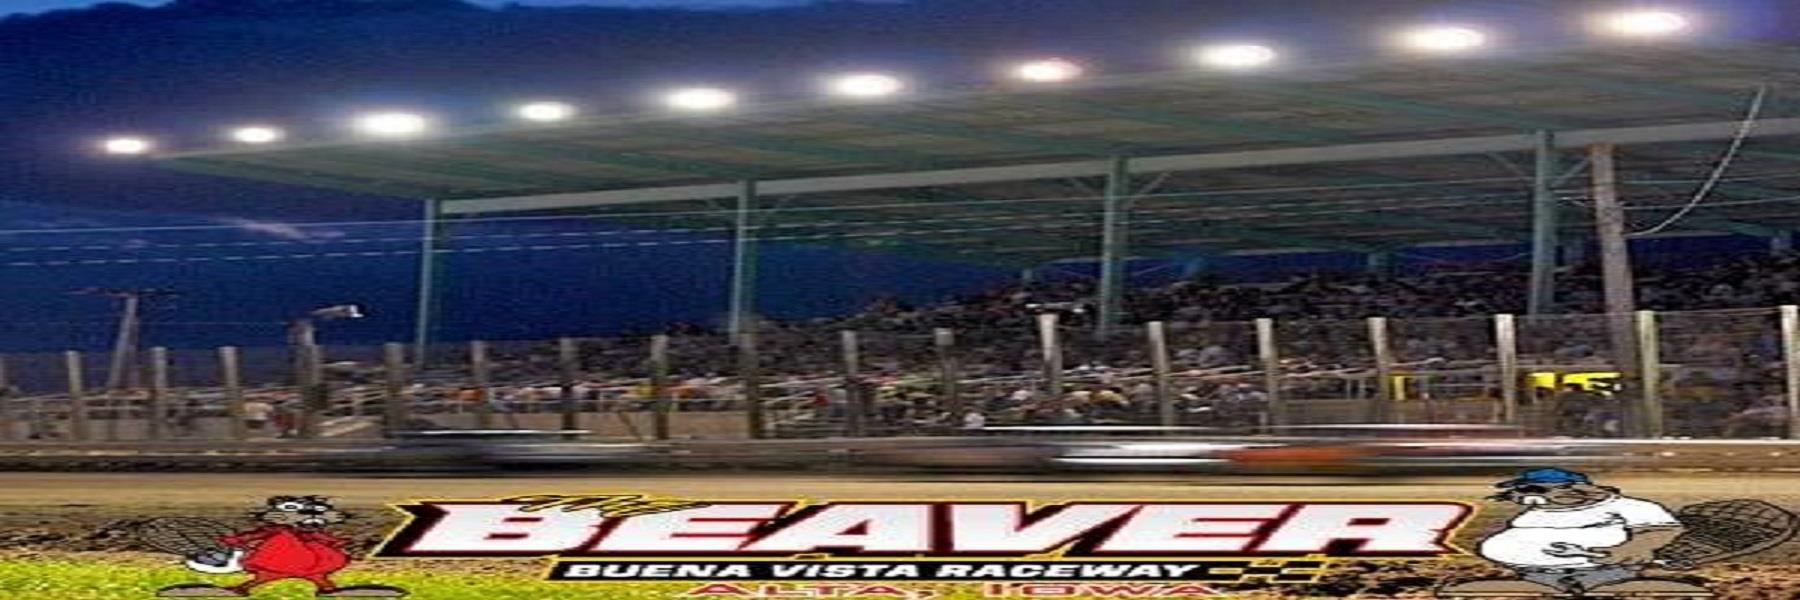 8/25/2021 - Buena Vista Raceway